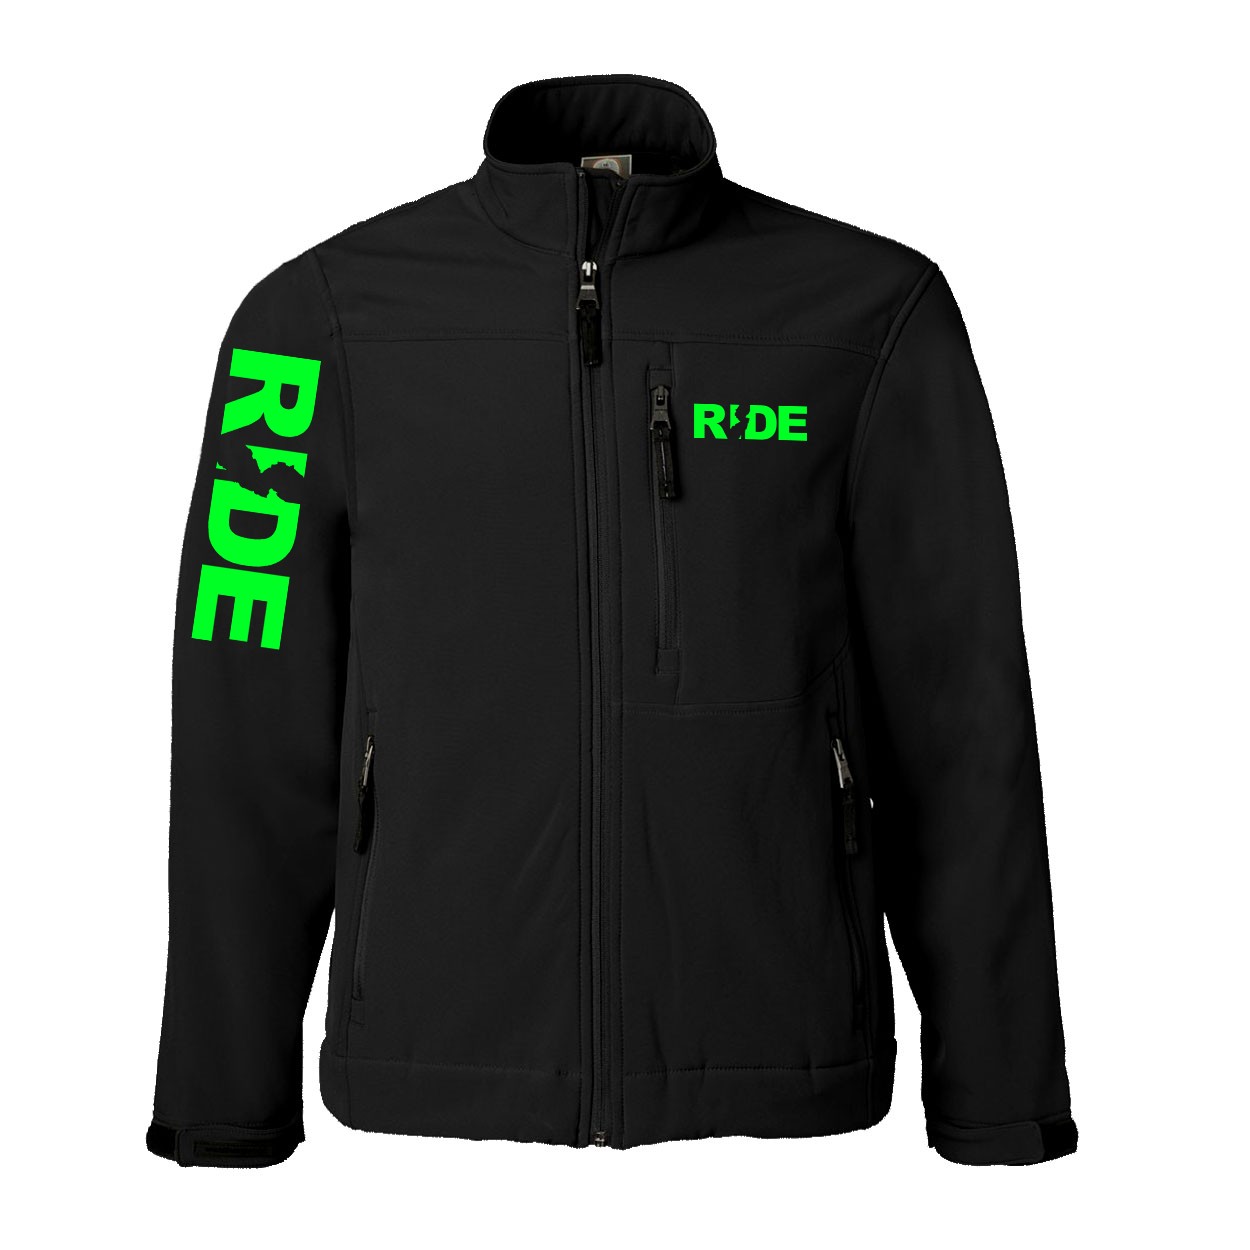 Ride New Jersey Classic Soft Shell Weatherproof Jacket (Green Logo)